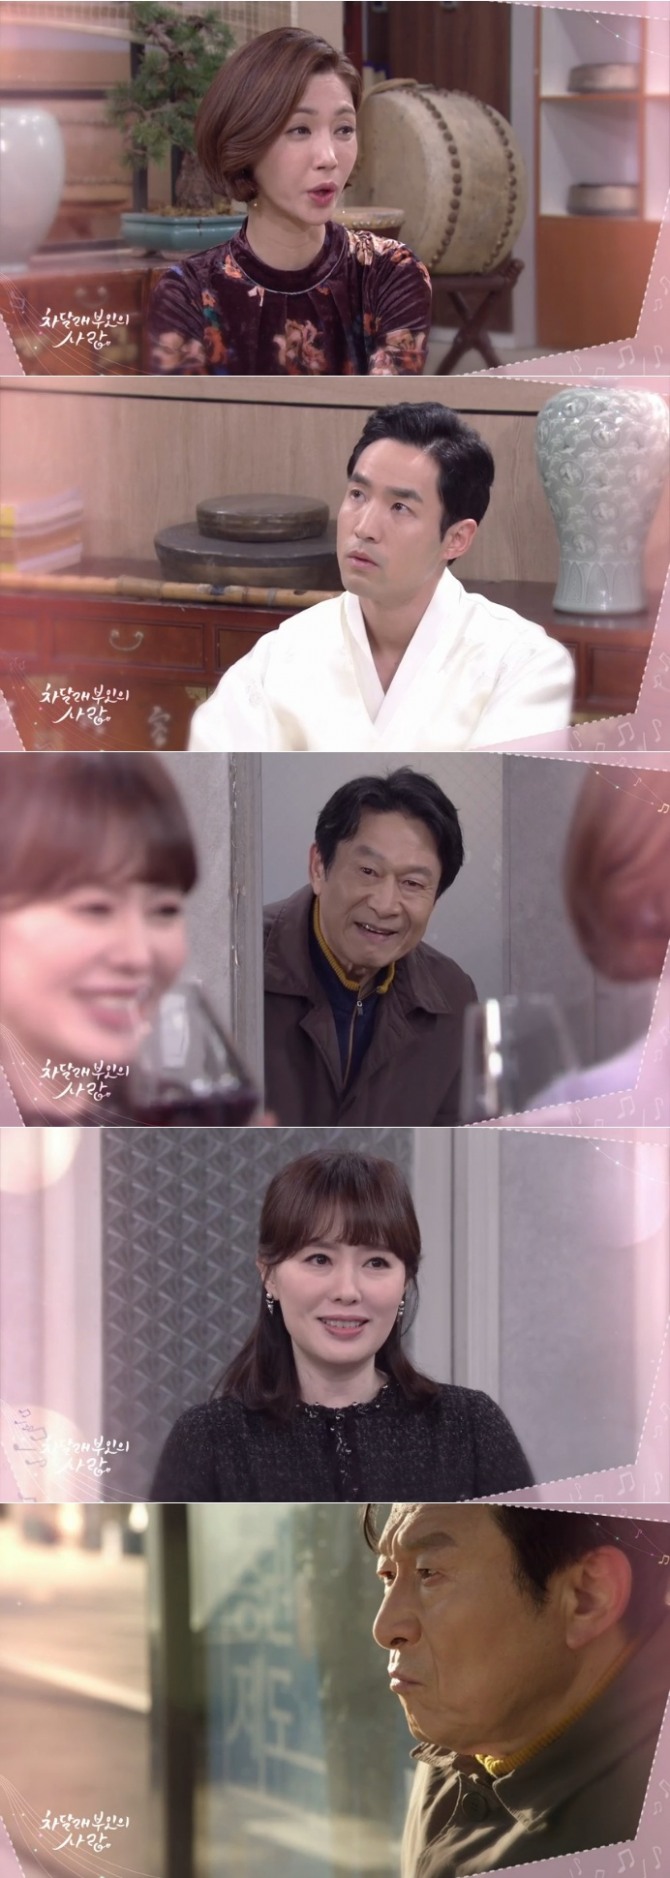 15일 오전 방송되는 KBS2TV 일일드라마 '차달래부인의 사랑' 97회에서는 김복남(김응수)이 치매로 아내 차진옥(하희라)을 비롯해 가족들에게 짐이 된다고 자책해 가출하는 반전이 그려진다. 사진=KBS 영상 캡처